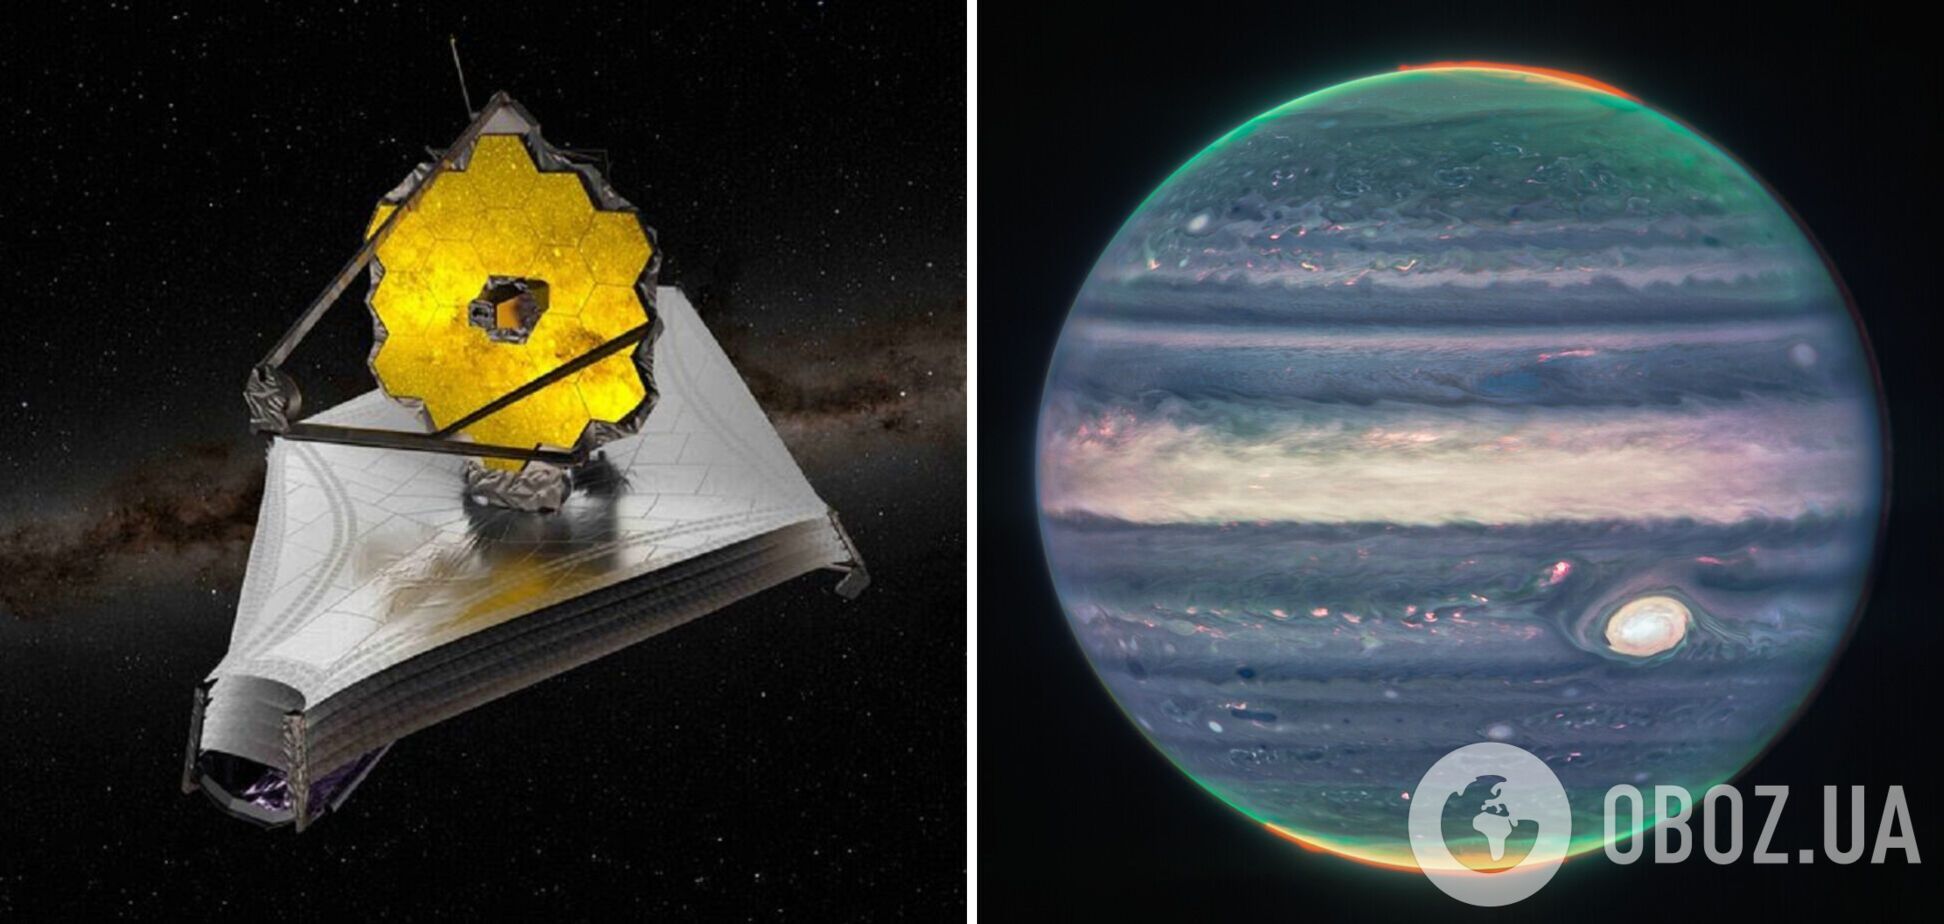 Телескоп 'Джеймс Уэбб' сделал цветные снимки Юпитера: видны полярные сияния и гигантский шторм